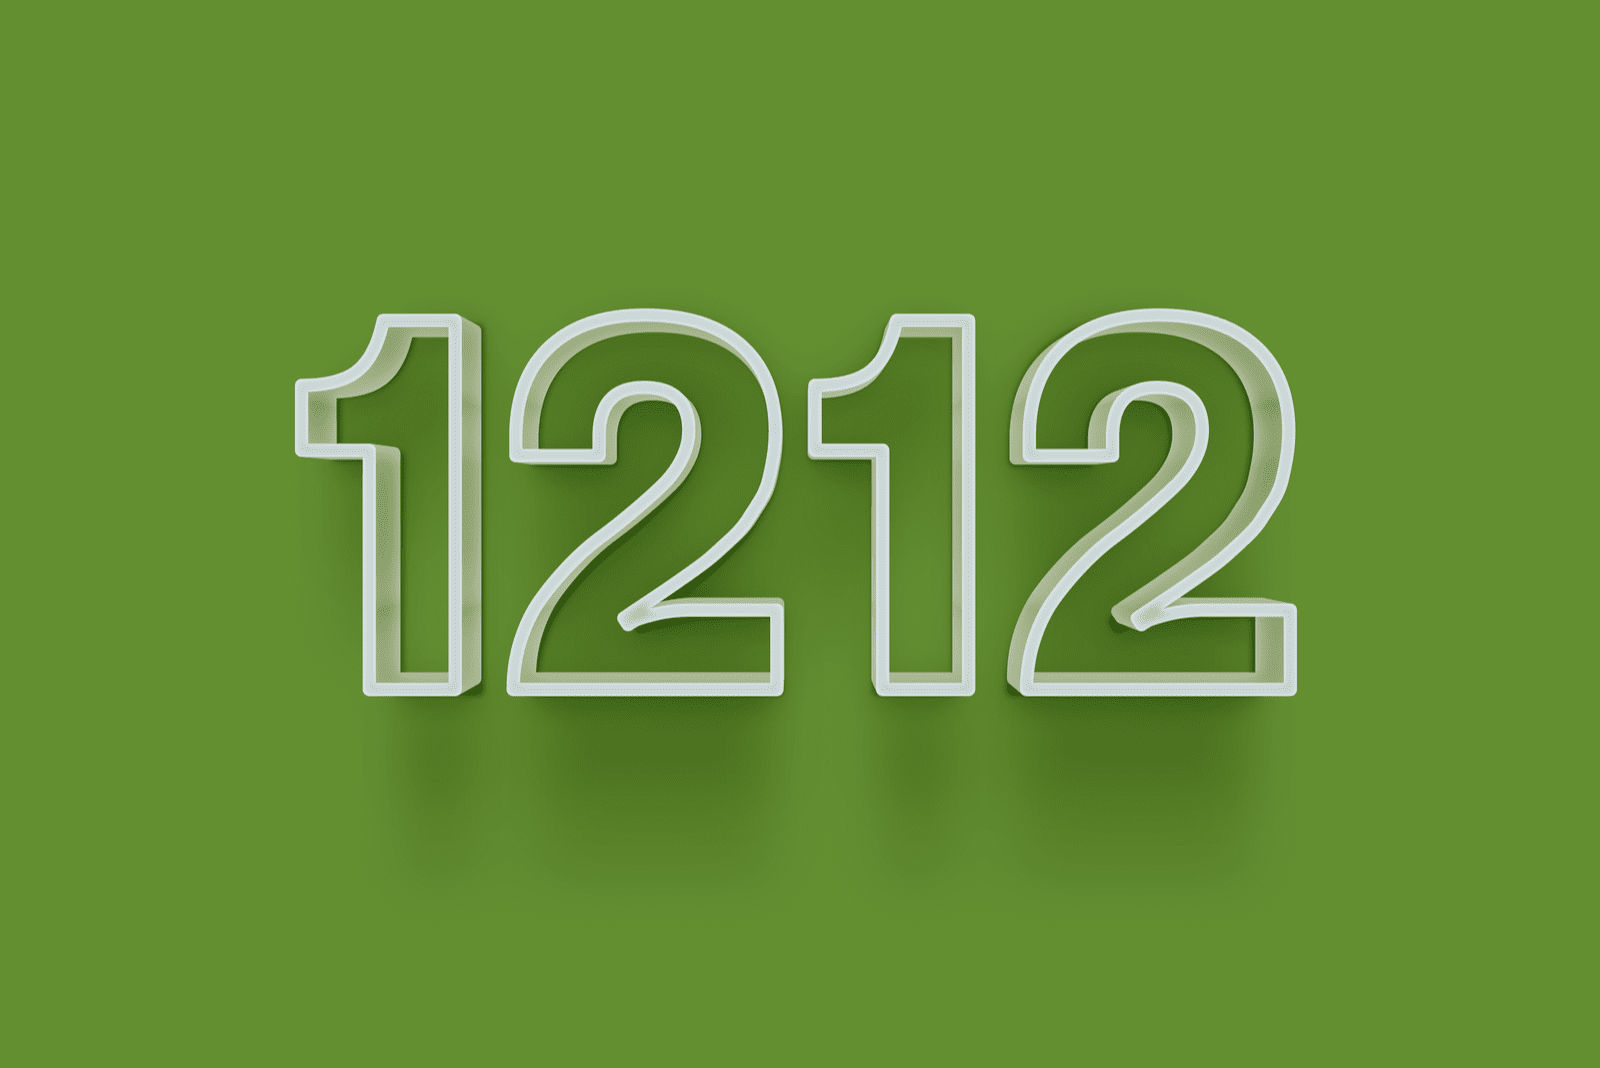 1212 su sfondo verde